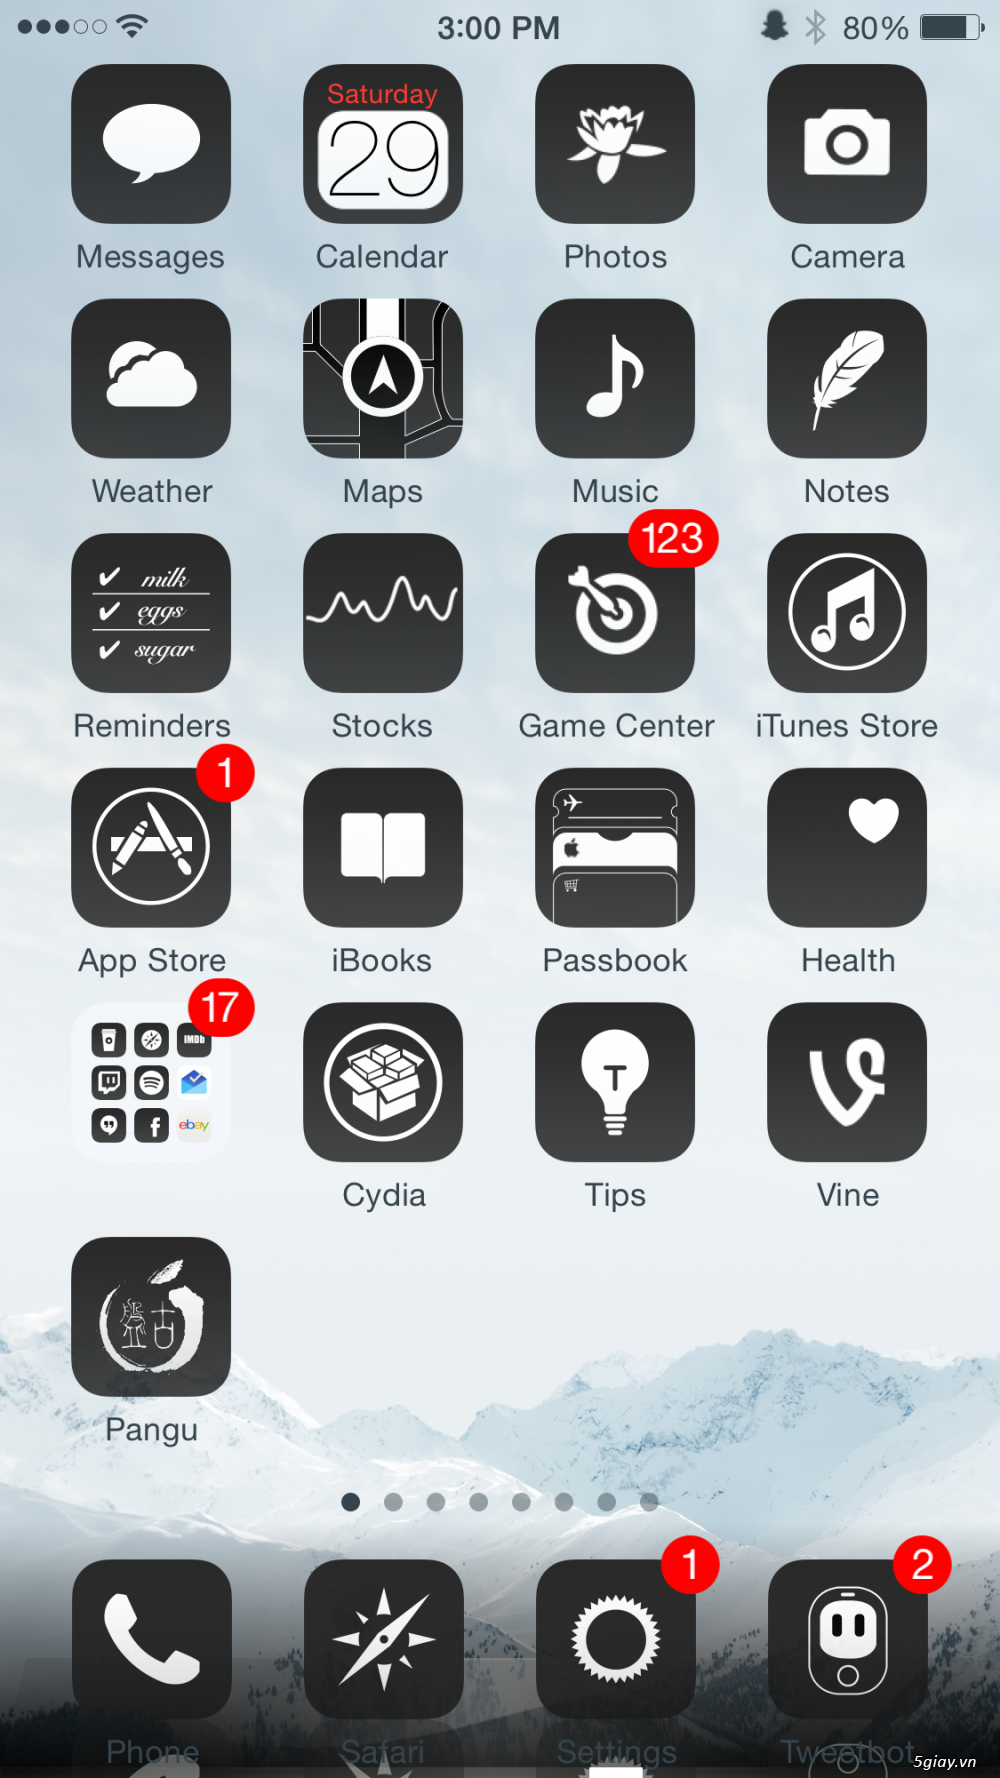 Tổng hợp một số theme đẹp trên iOS 10 (Phần 1) – Hoàng Kiên